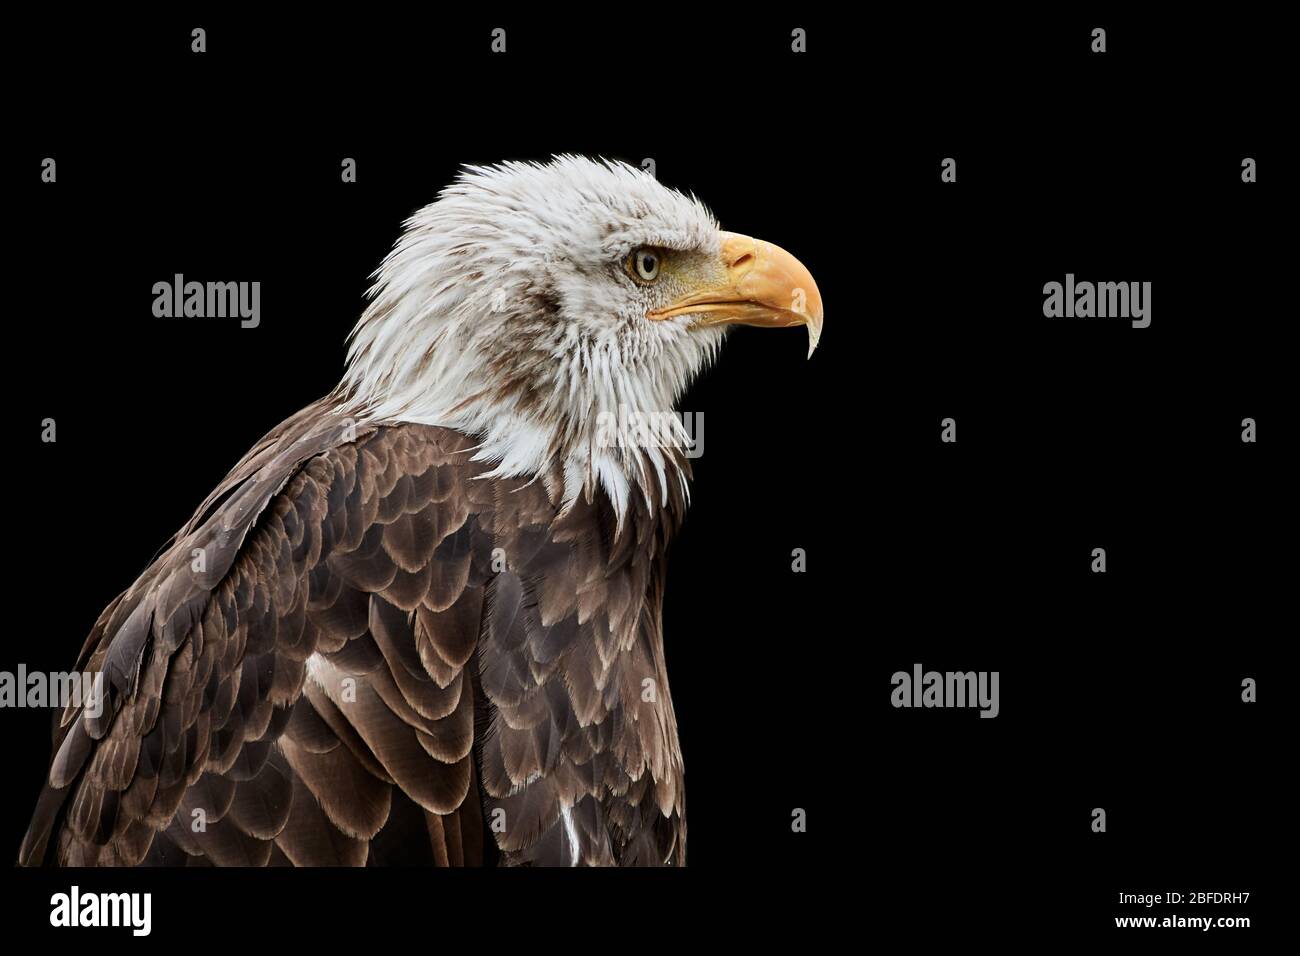 Close-up of a Bald eagle (Haliaeetus leucocephalus) isolated on black background Stock Photo